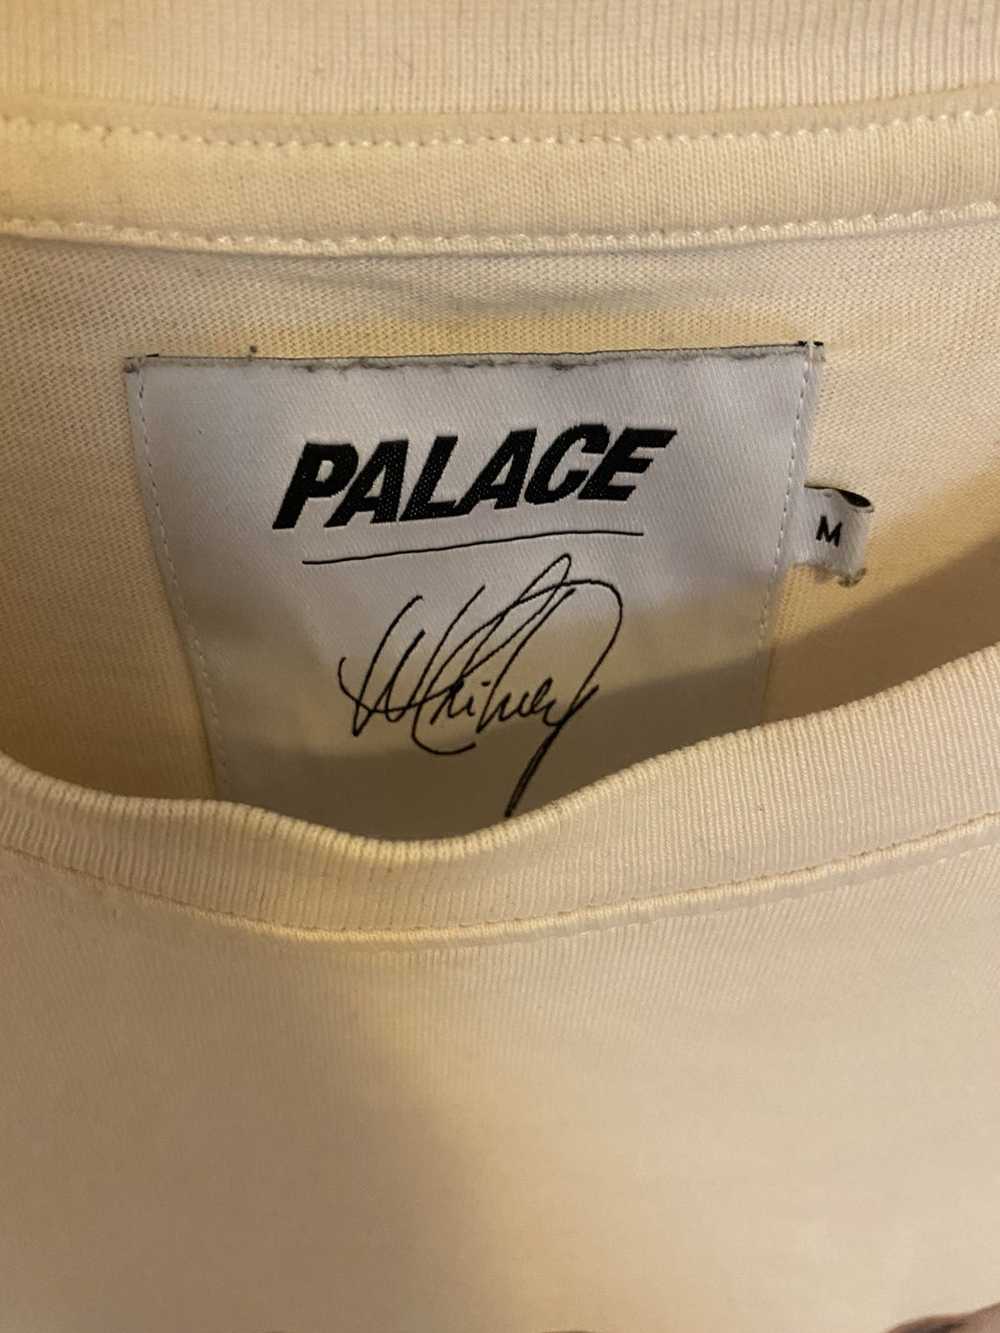 Palace Palace Whitney Houston Photo Tee / OFF WHI… - image 3